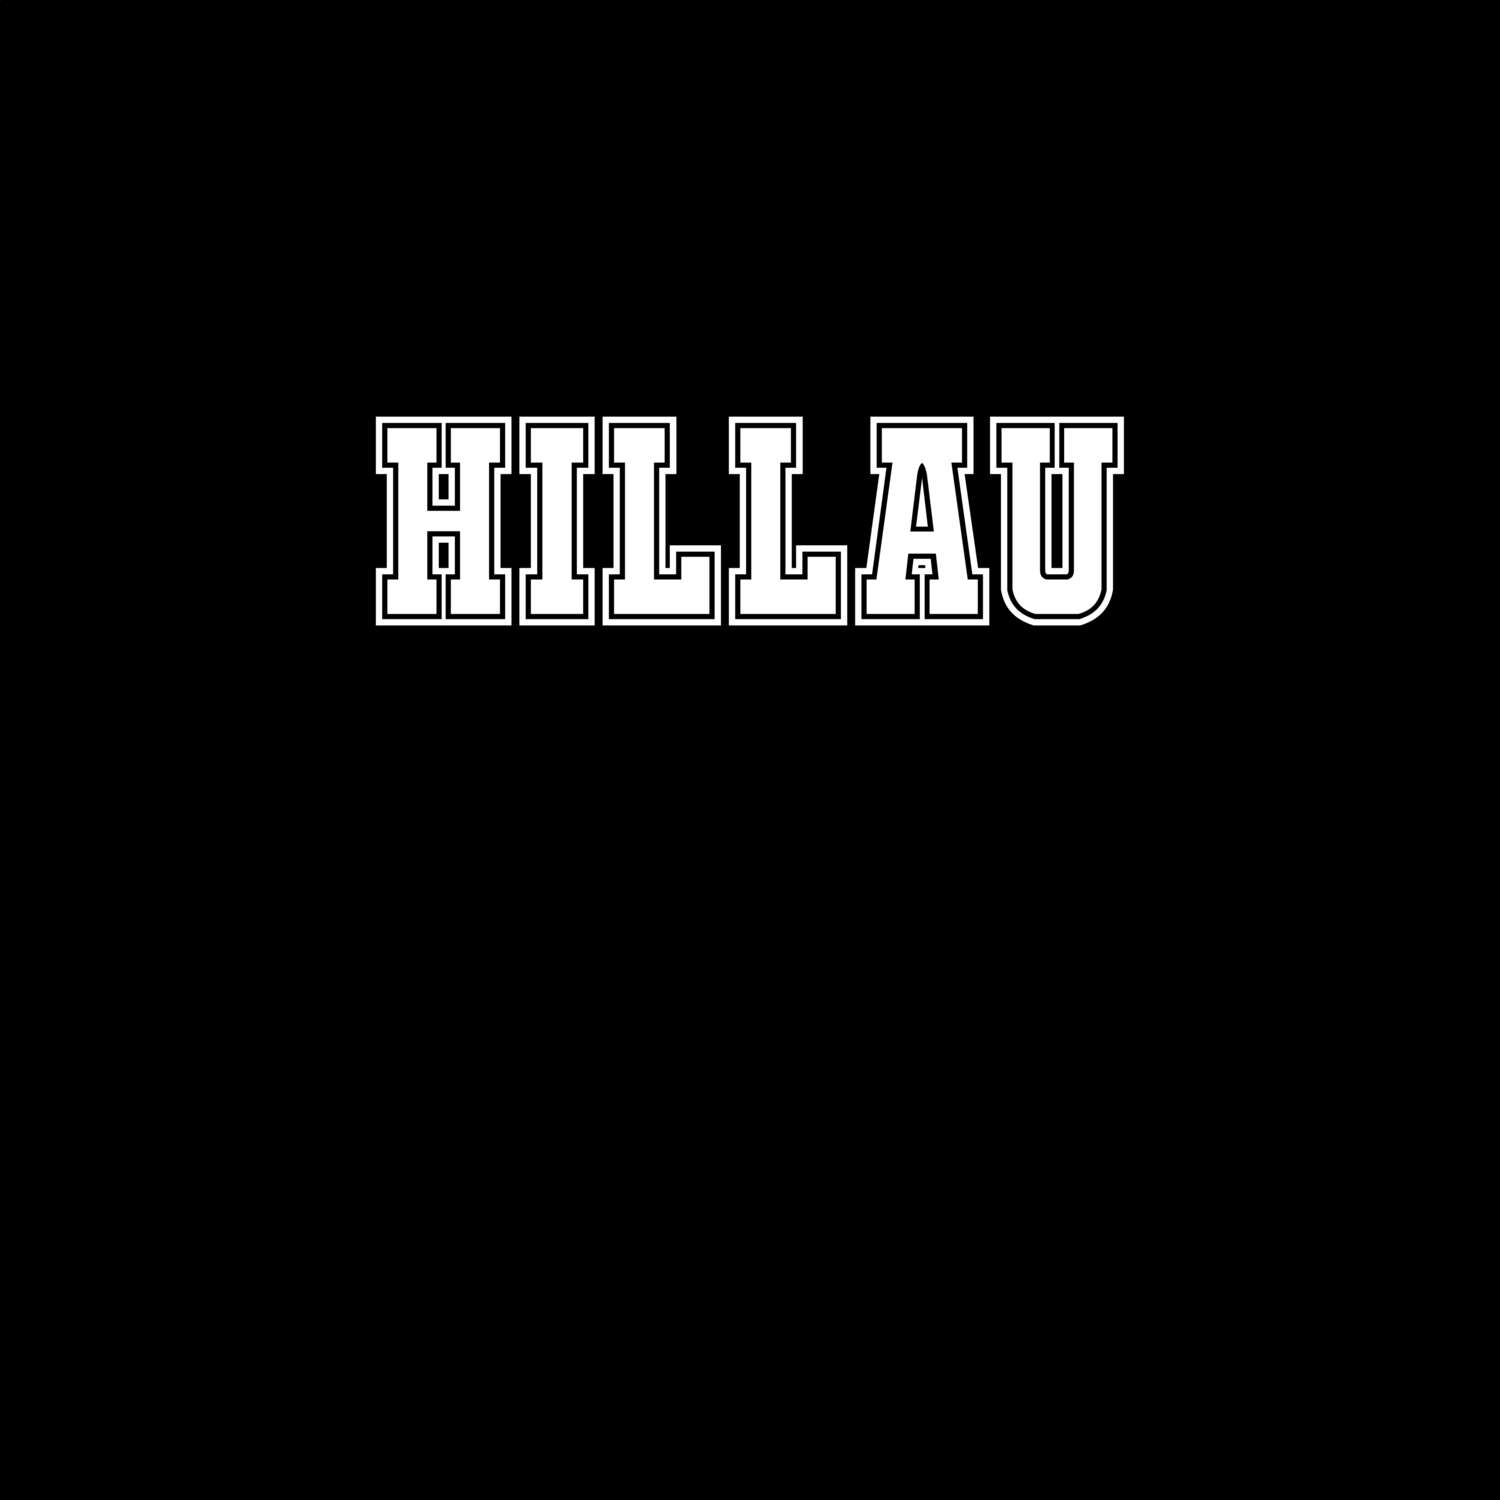 Hillau T-Shirt »Classic«